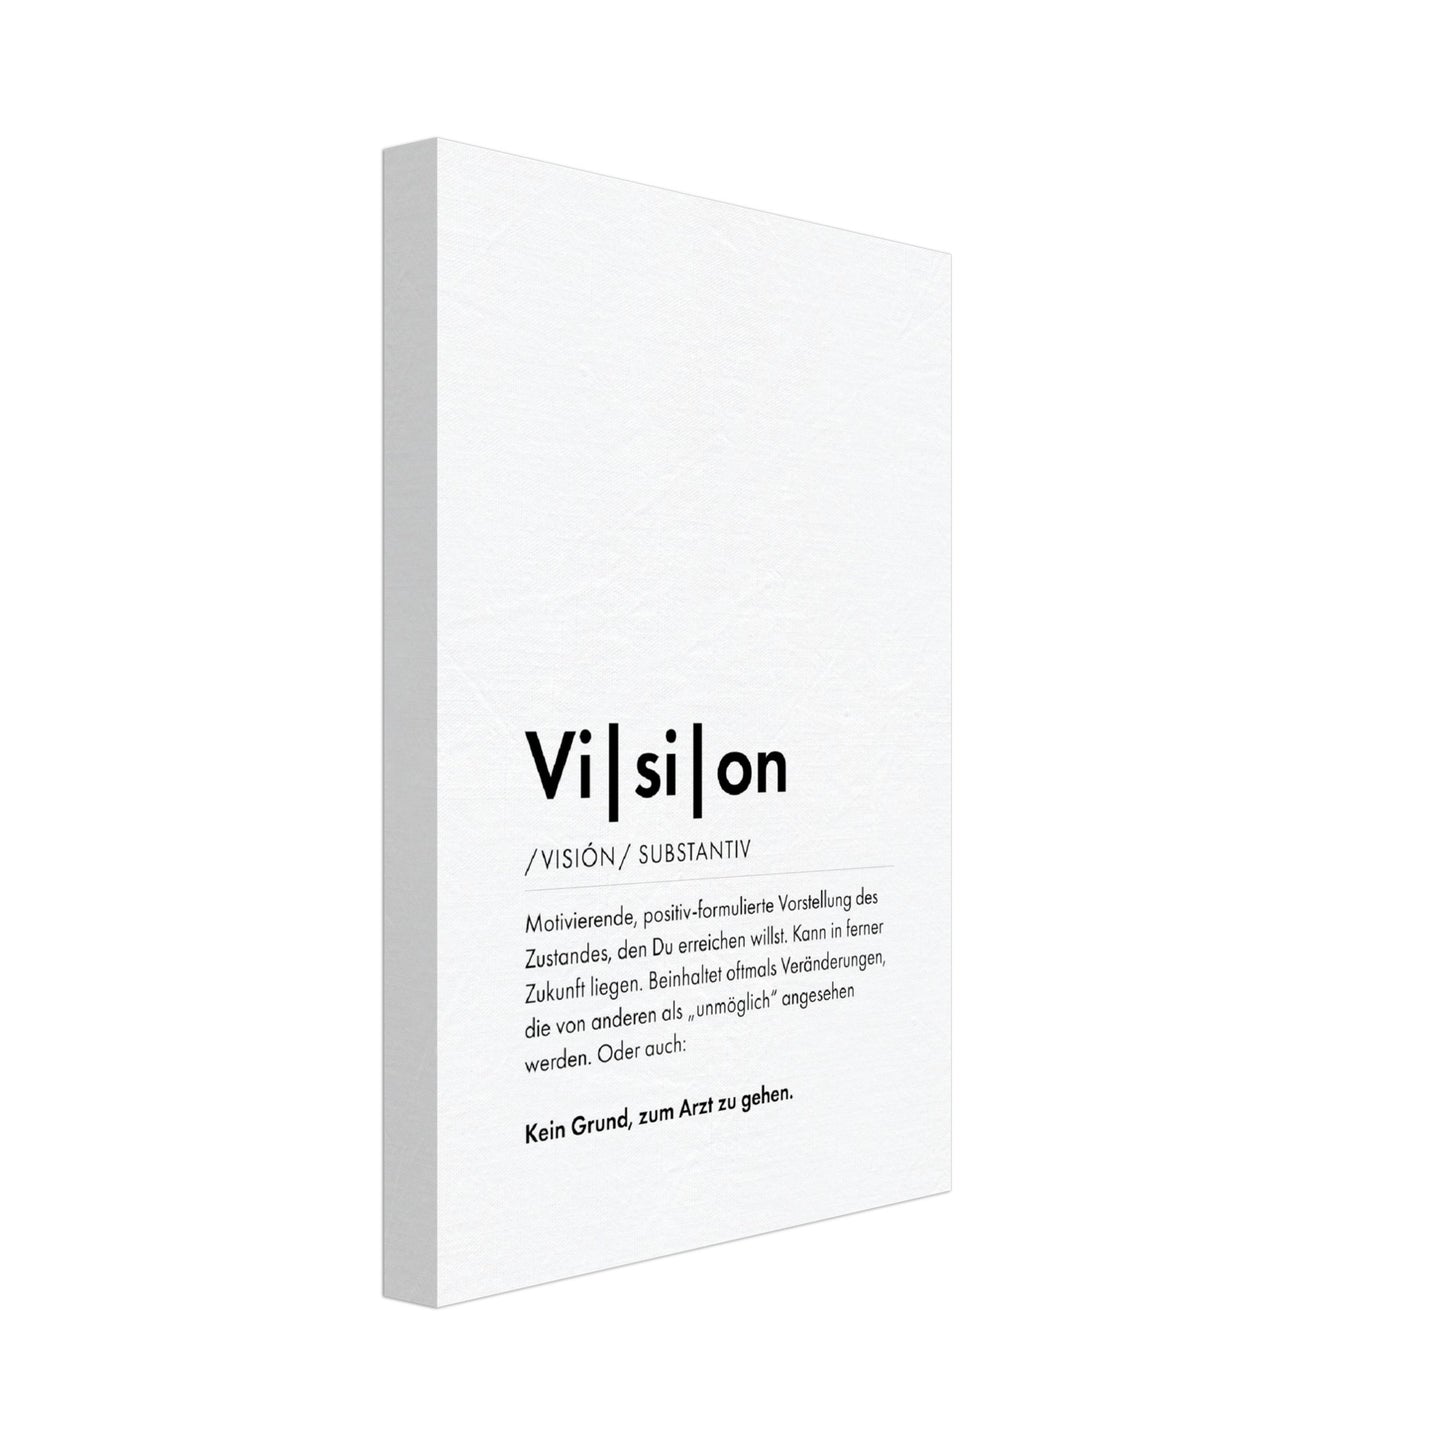 Vision - Wortdefinition-Wandbild - Leinwand Weiss Neutral im Hochformat - Typografie Worte Sprache Business Job